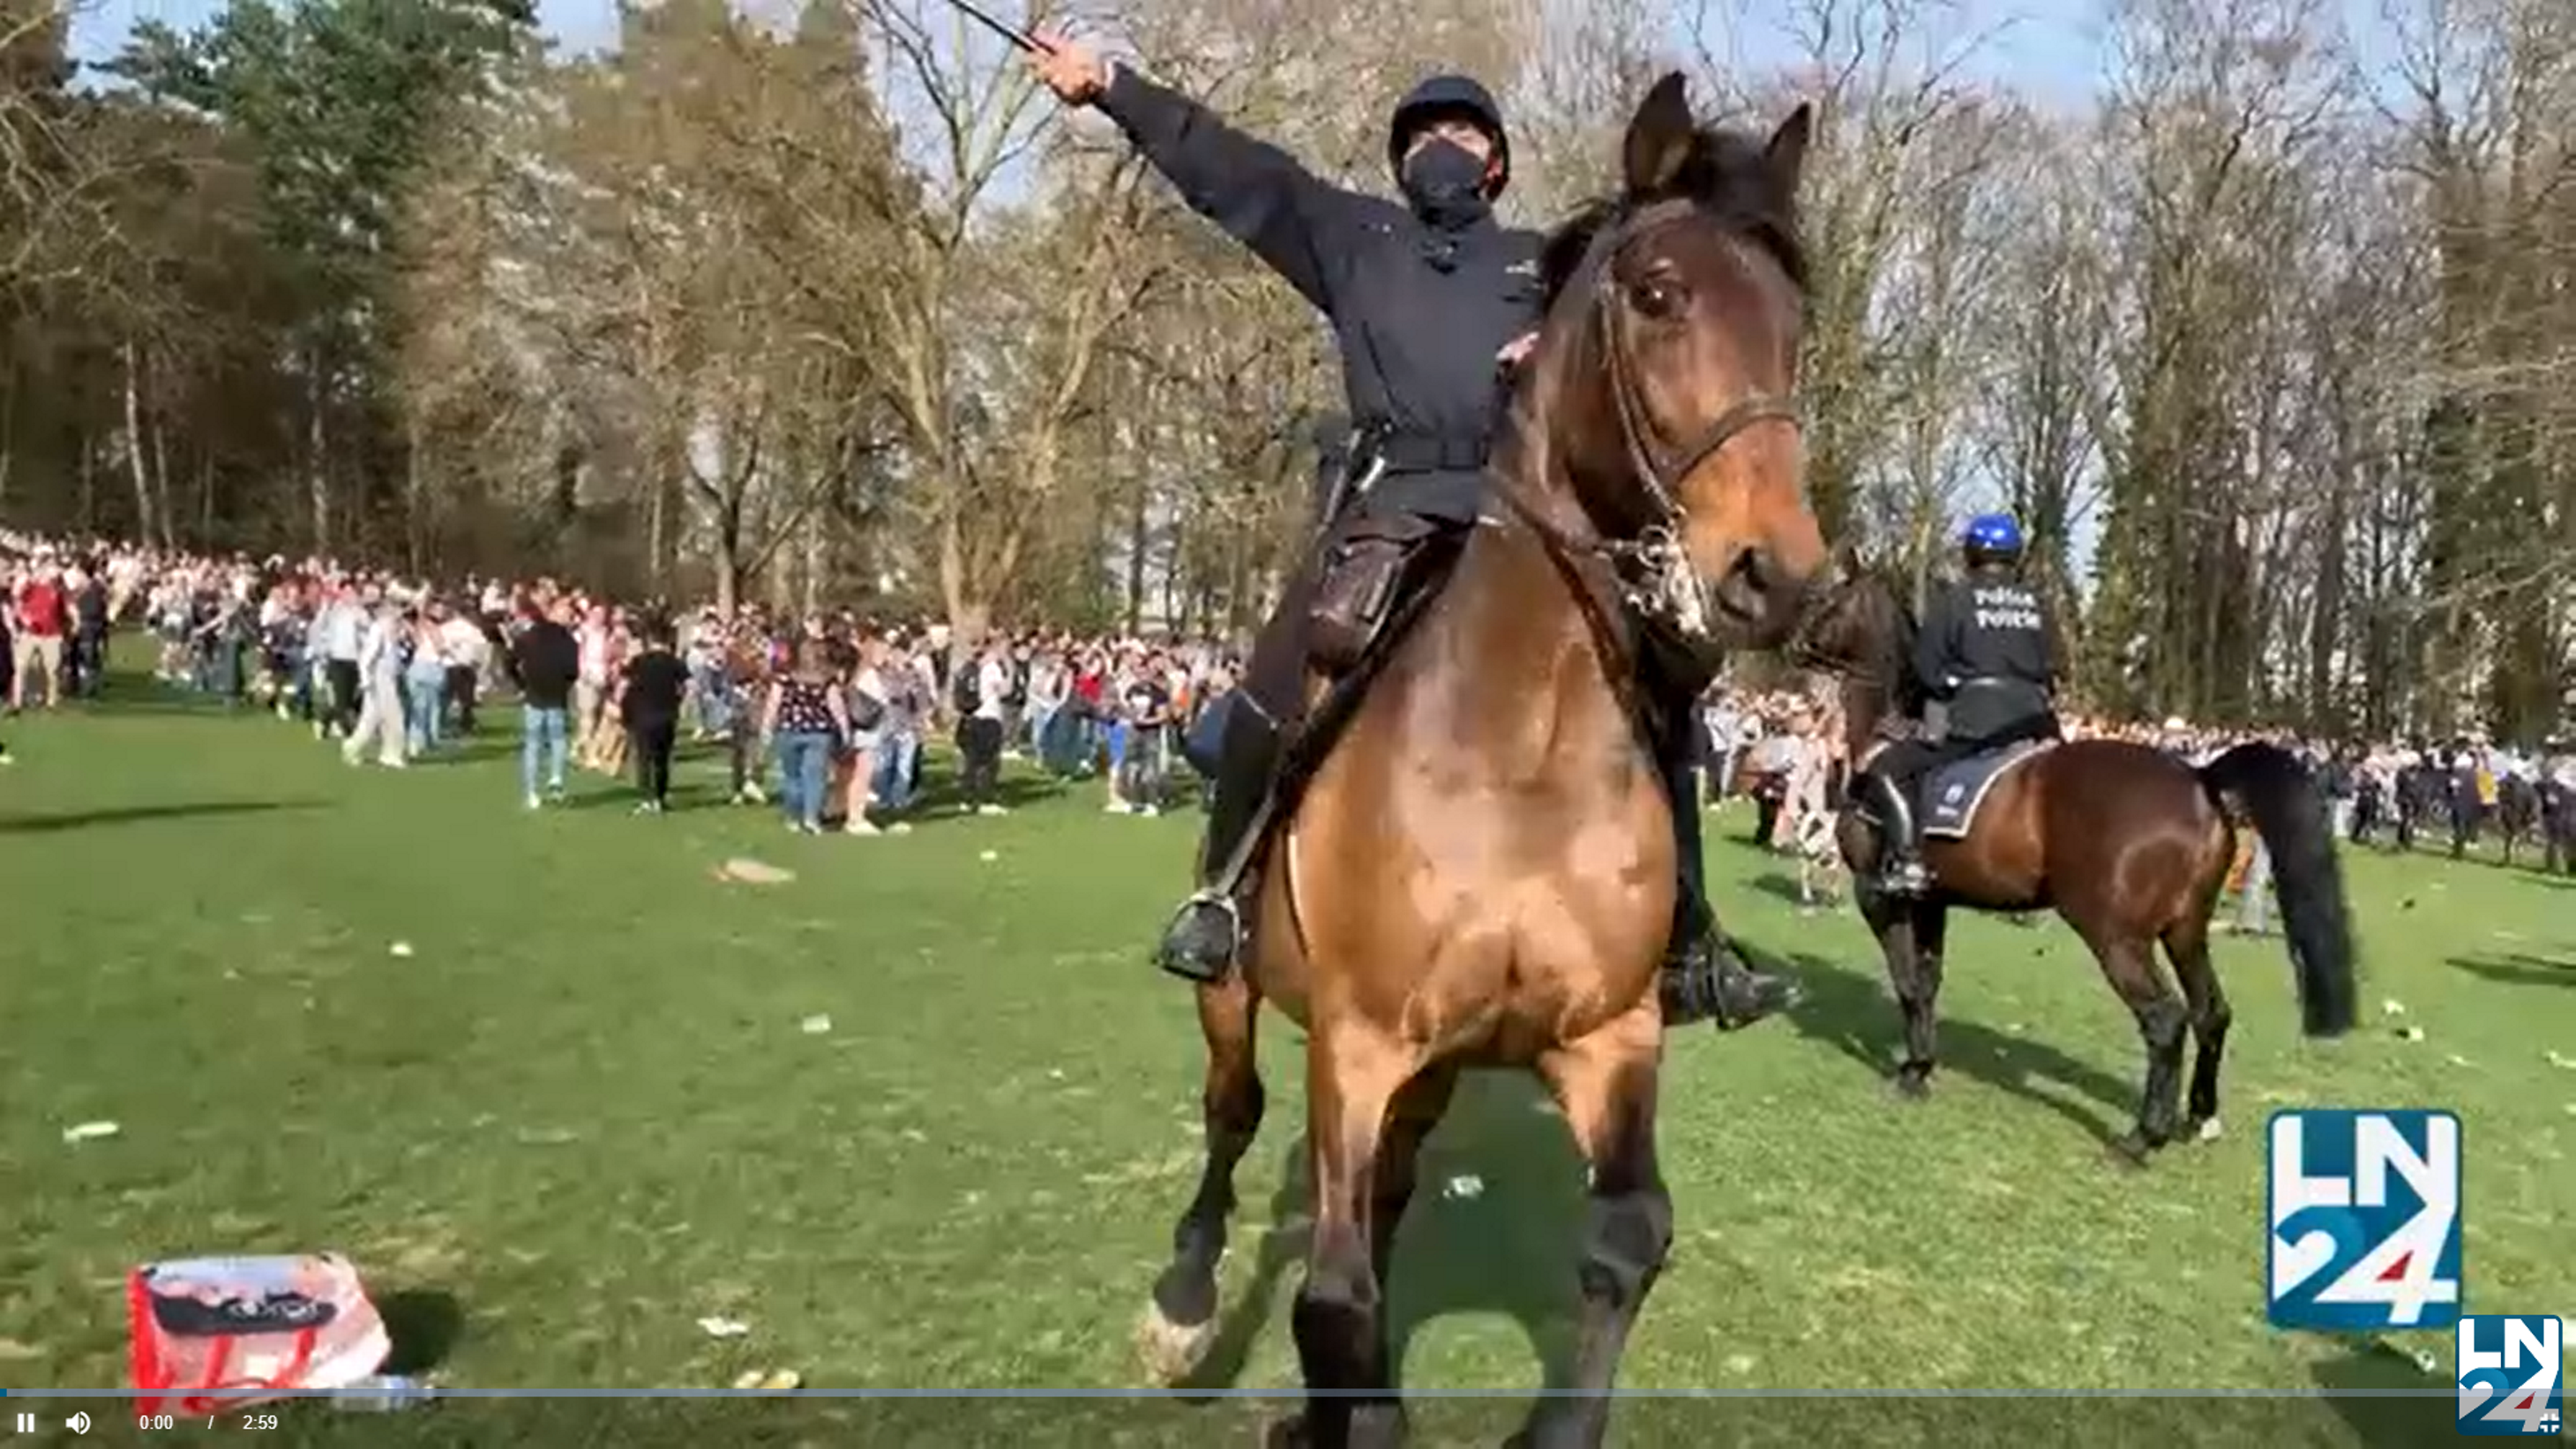 Cargas a caballo en Bruselas por una macrofiesta en plena Covid